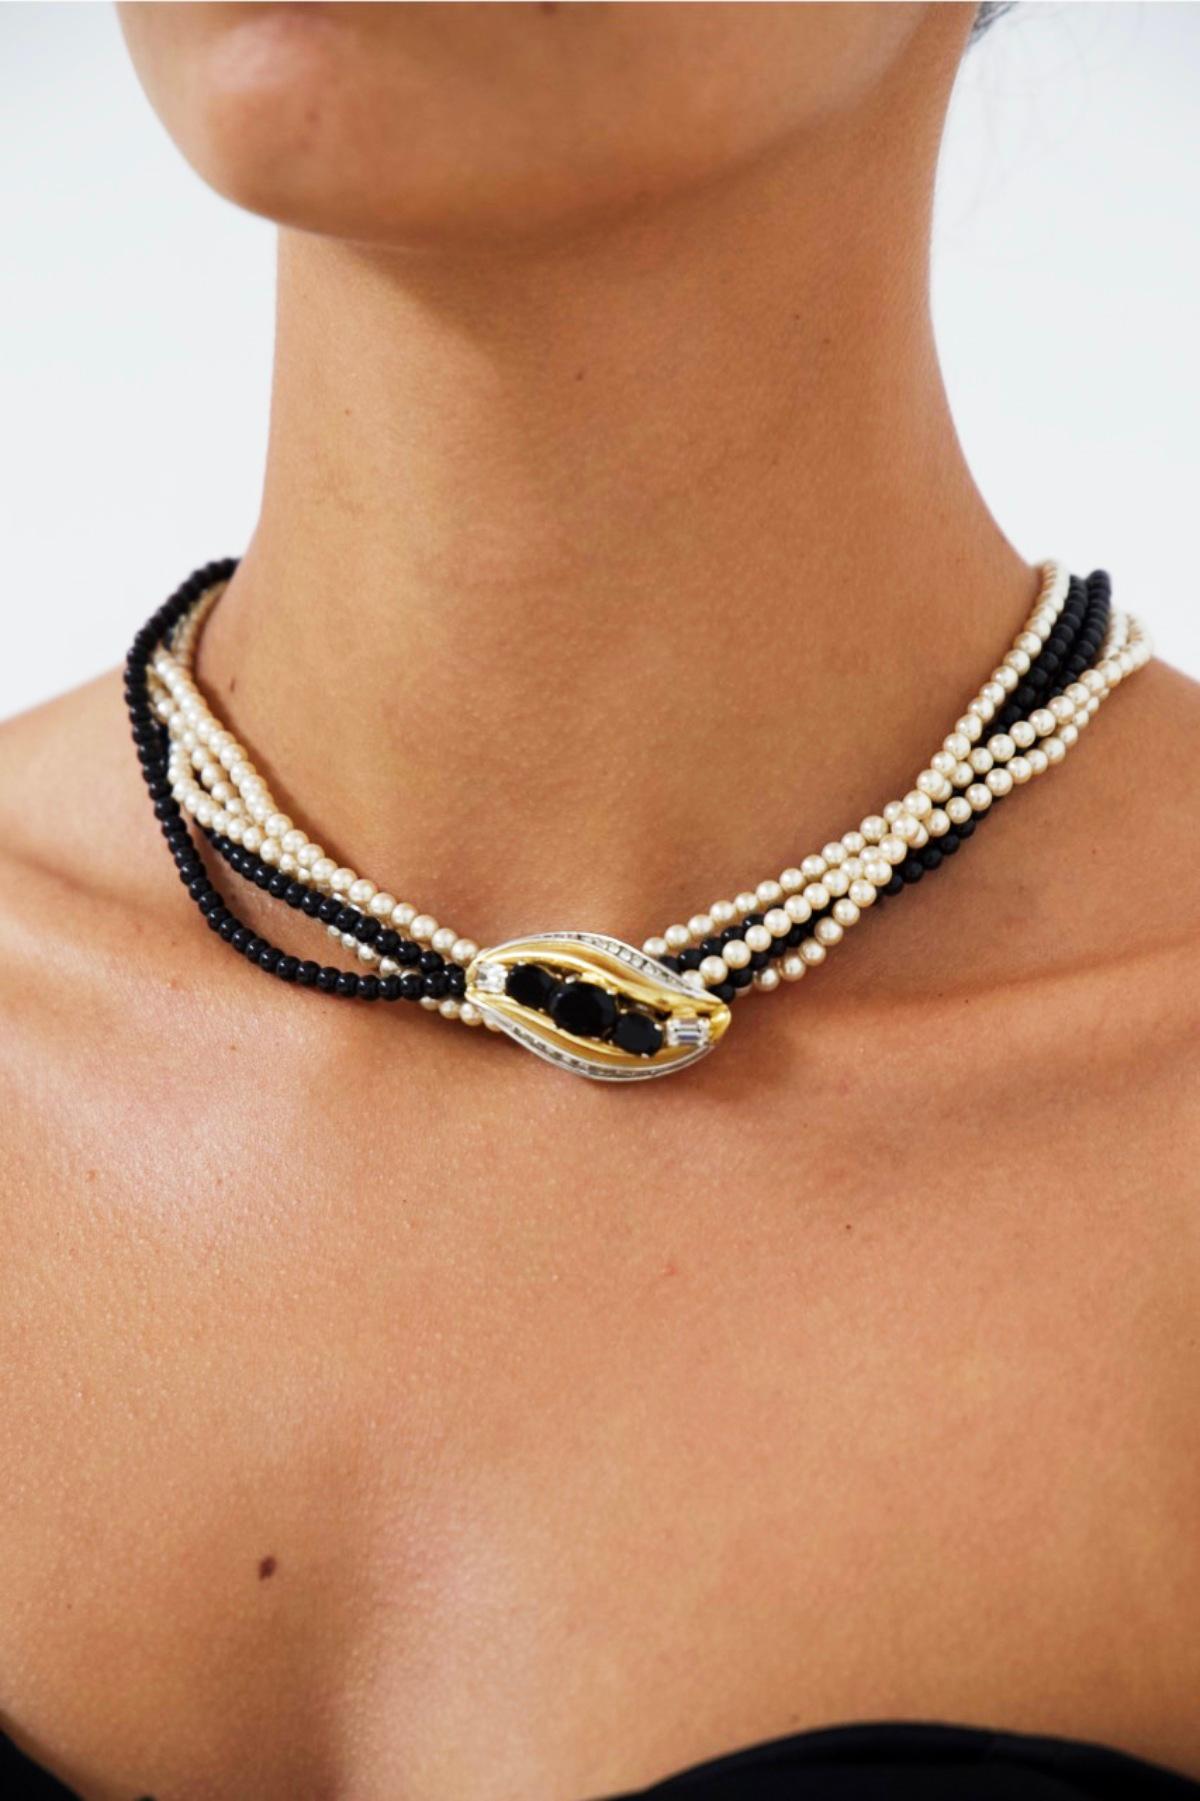 Superbe tour de cou en double perles réalisé dans les années 1980, belle fabrication française.
Le collier est merveilleux et élégant.
Il est composé de 2 rangs de perles noires et de trois rangs de perles blanches, très élégant. Au centre, on peut